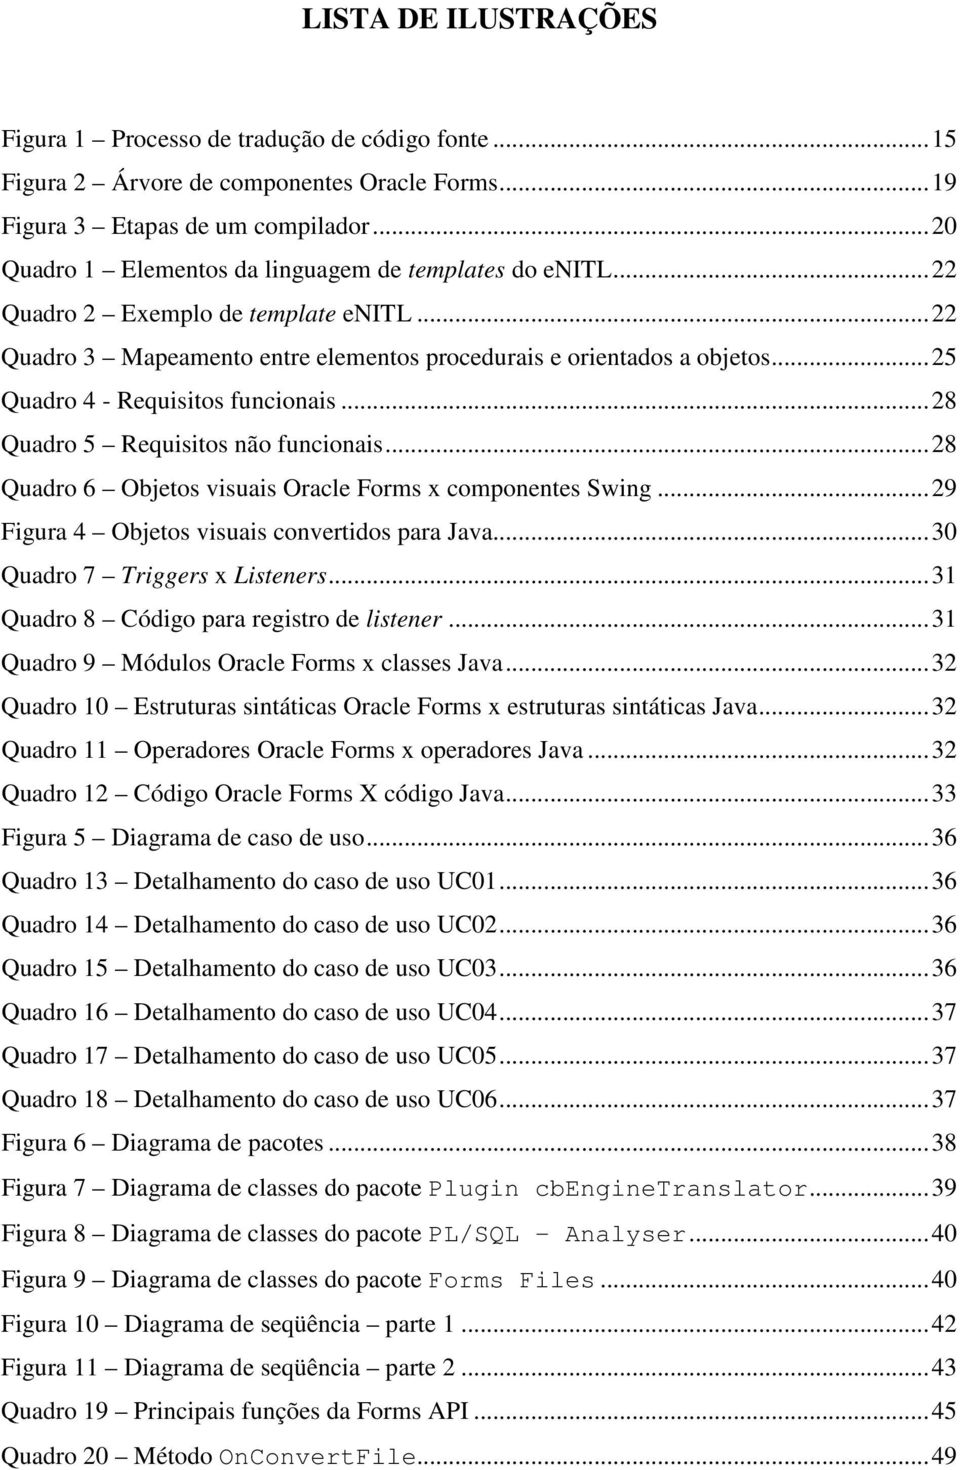 ..25 Quadro 4 - Requisitos funcionais...28 Quadro 5 Requisitos não funcionais...28 Quadro 6 Objetos visuais Oracle Forms x componentes Swing...29 Figura 4 Objetos visuais convertidos para Java.